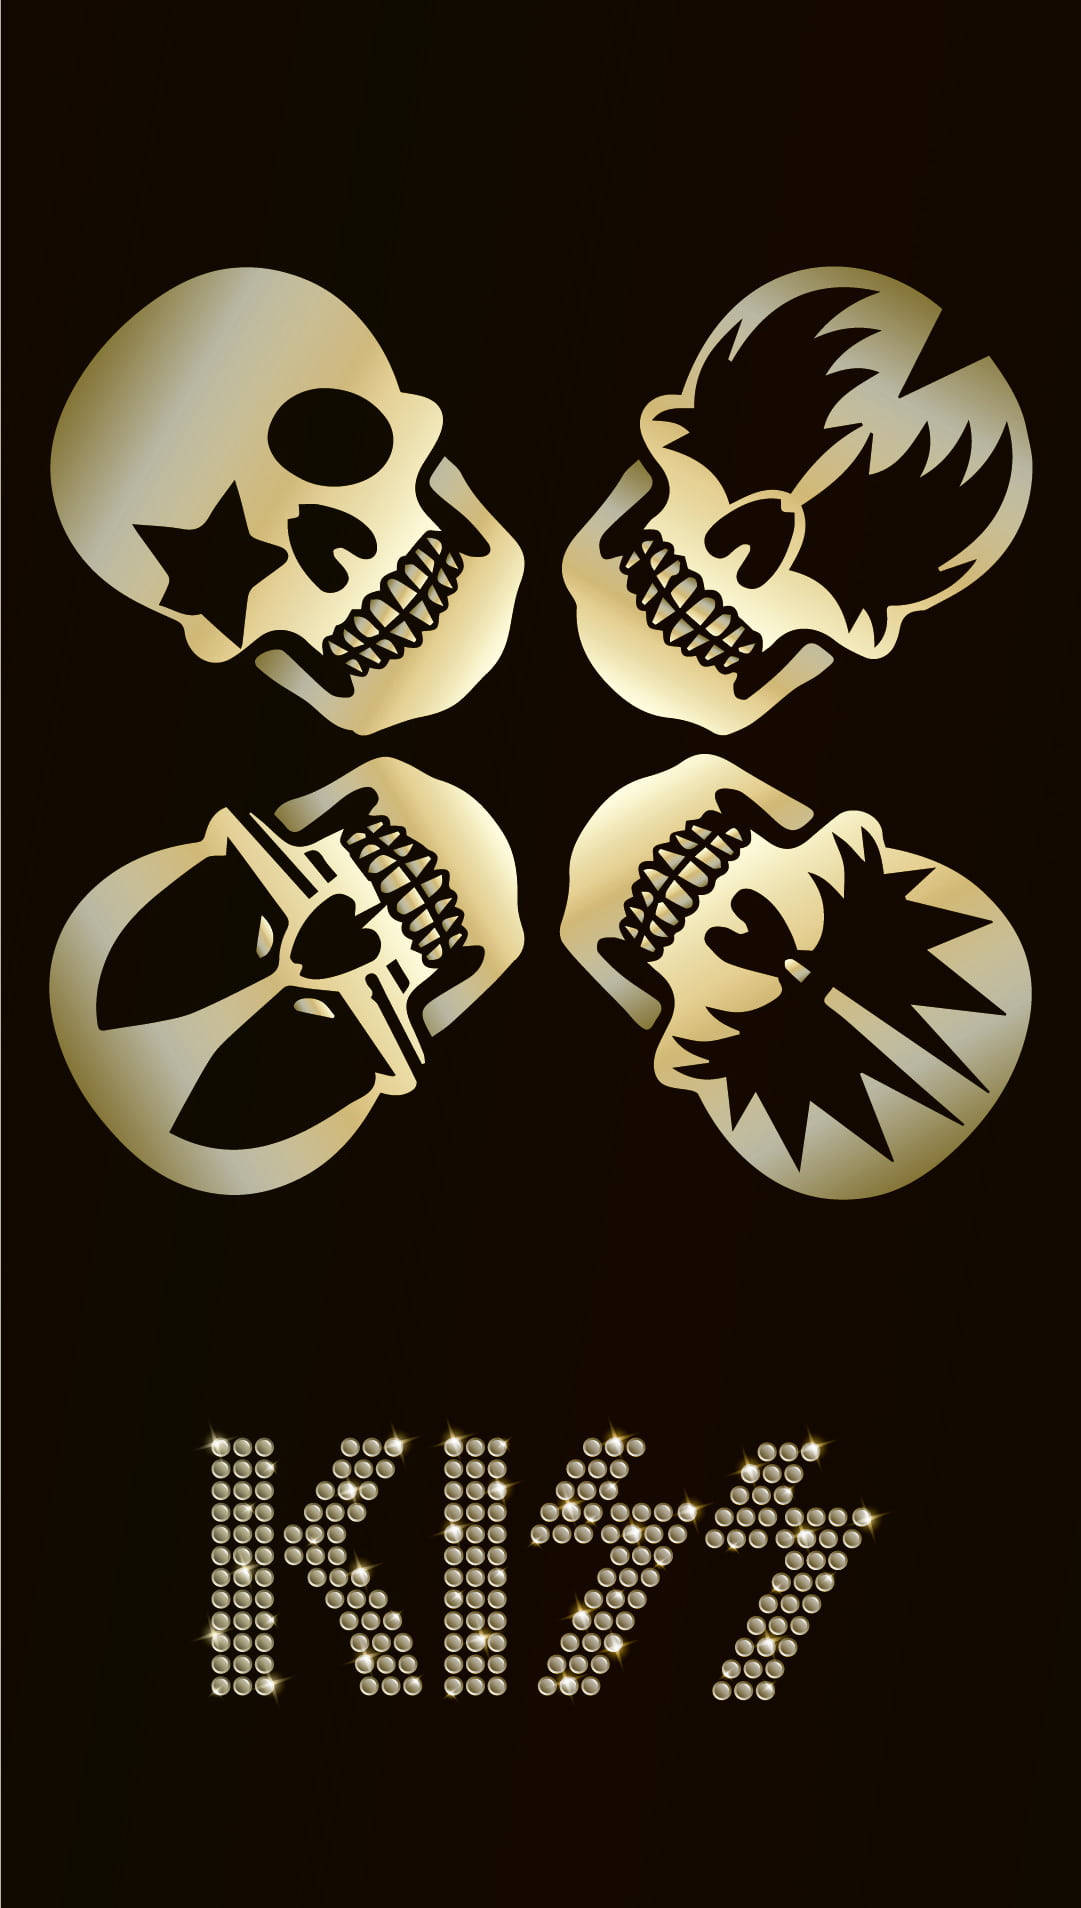 Skullkiss Band: Skull Kiss Band Wallpaper